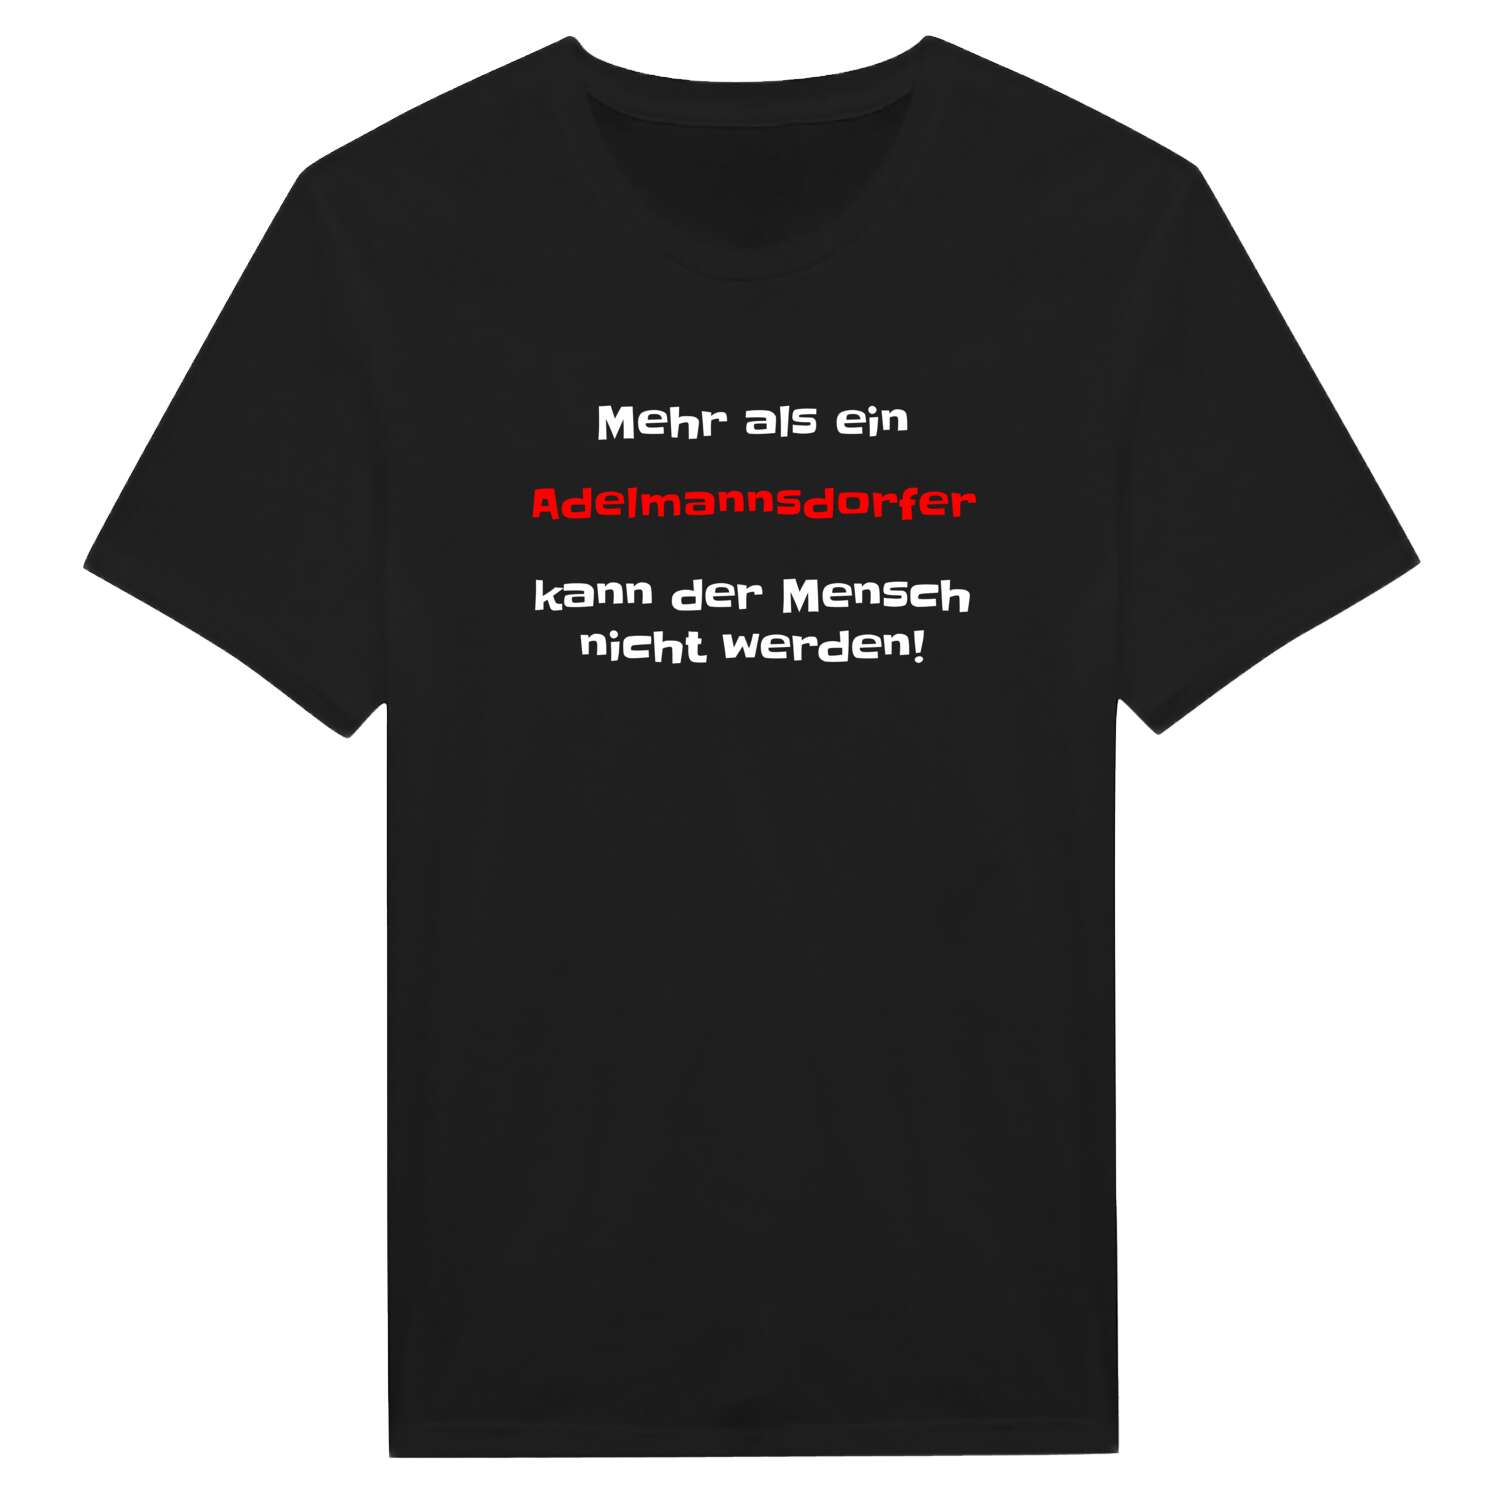 Adelmannsdorf T-Shirt »Mehr als ein«